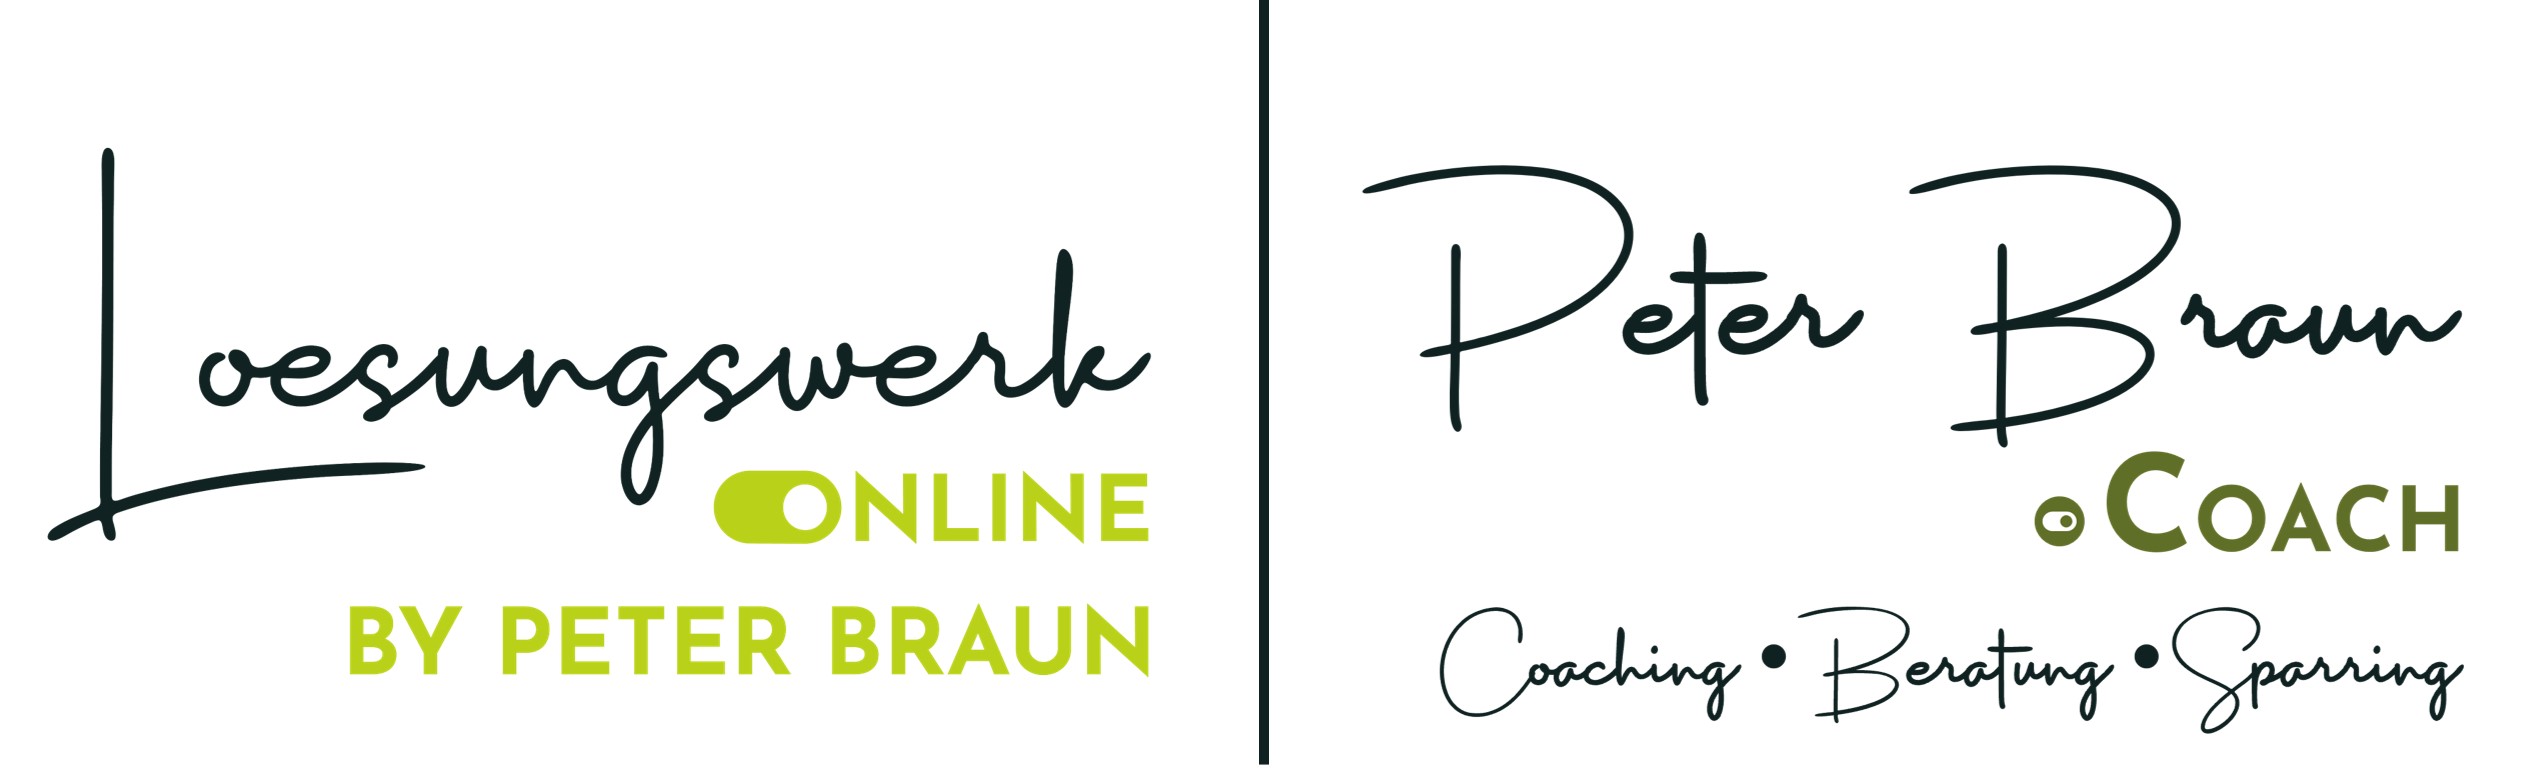 Peter Braun Logo